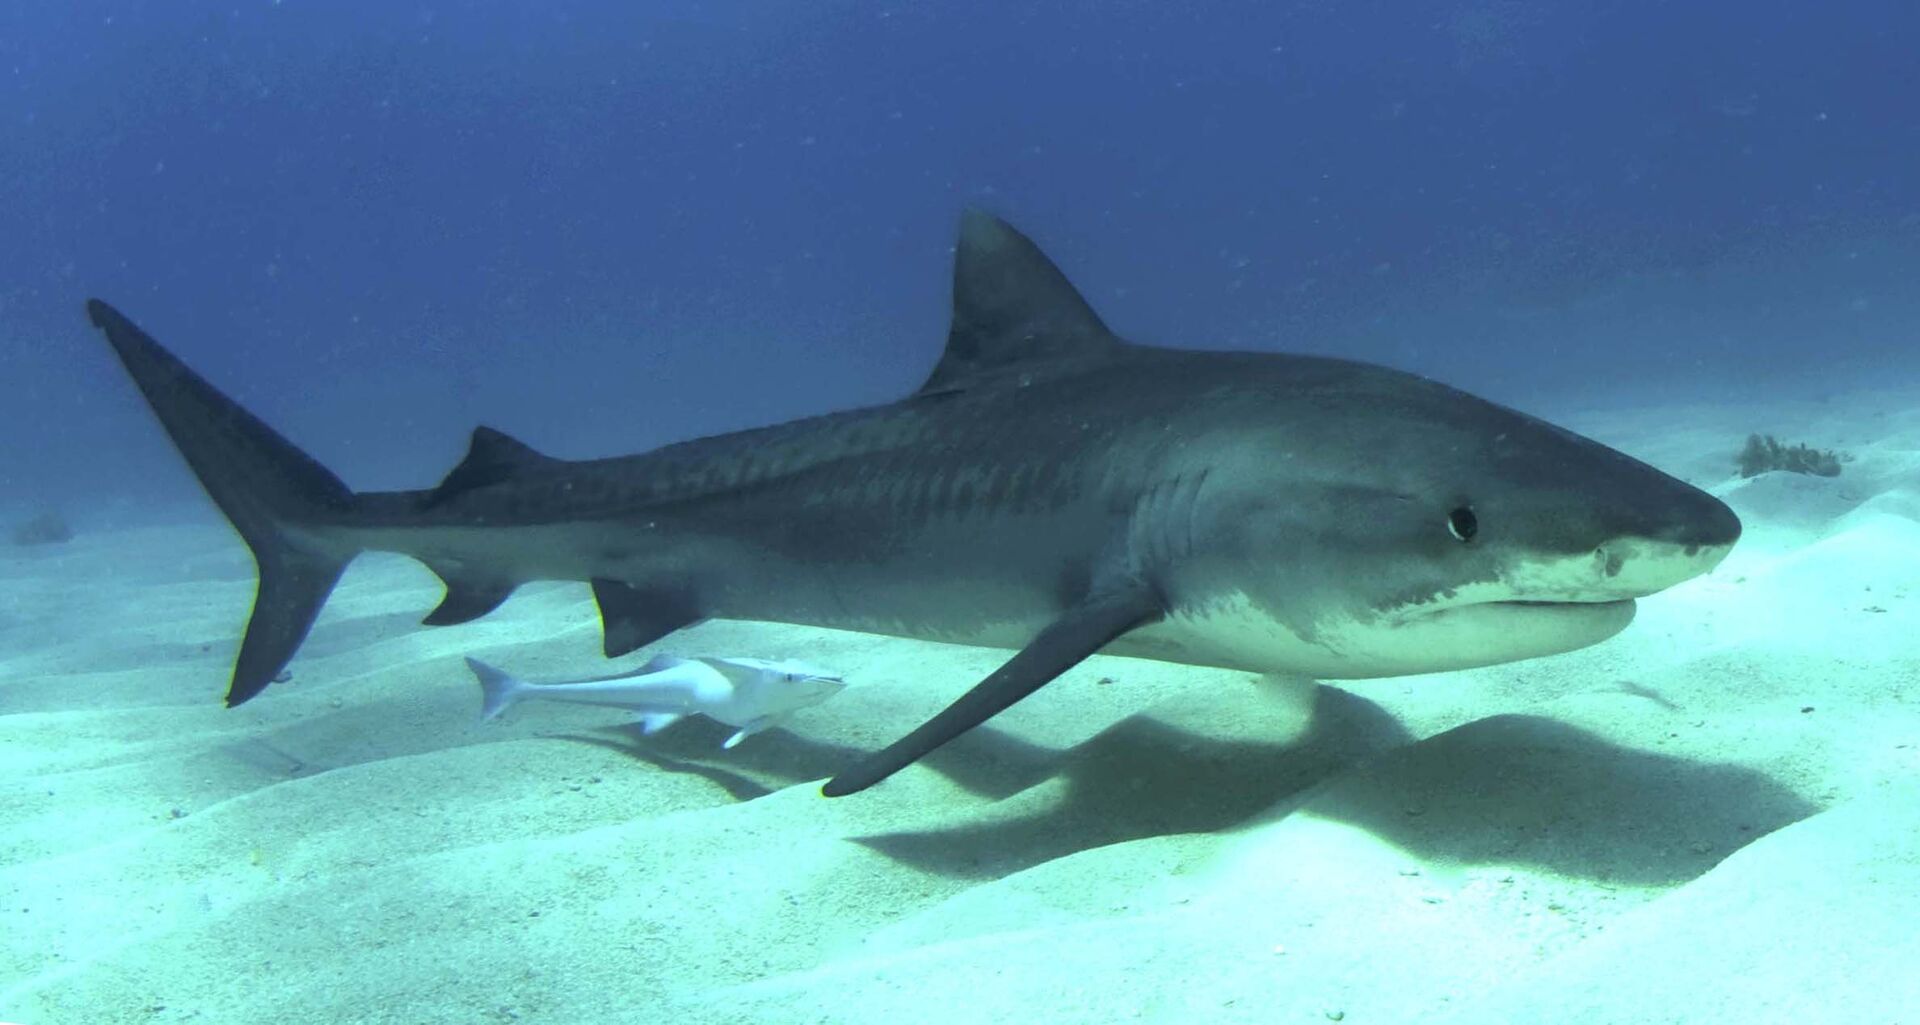 Caçadores solitários: cientistas descobrem que tubarões de espécies distintas não caçam juntos - Sputnik Brasil, 1920, 07.07.2021